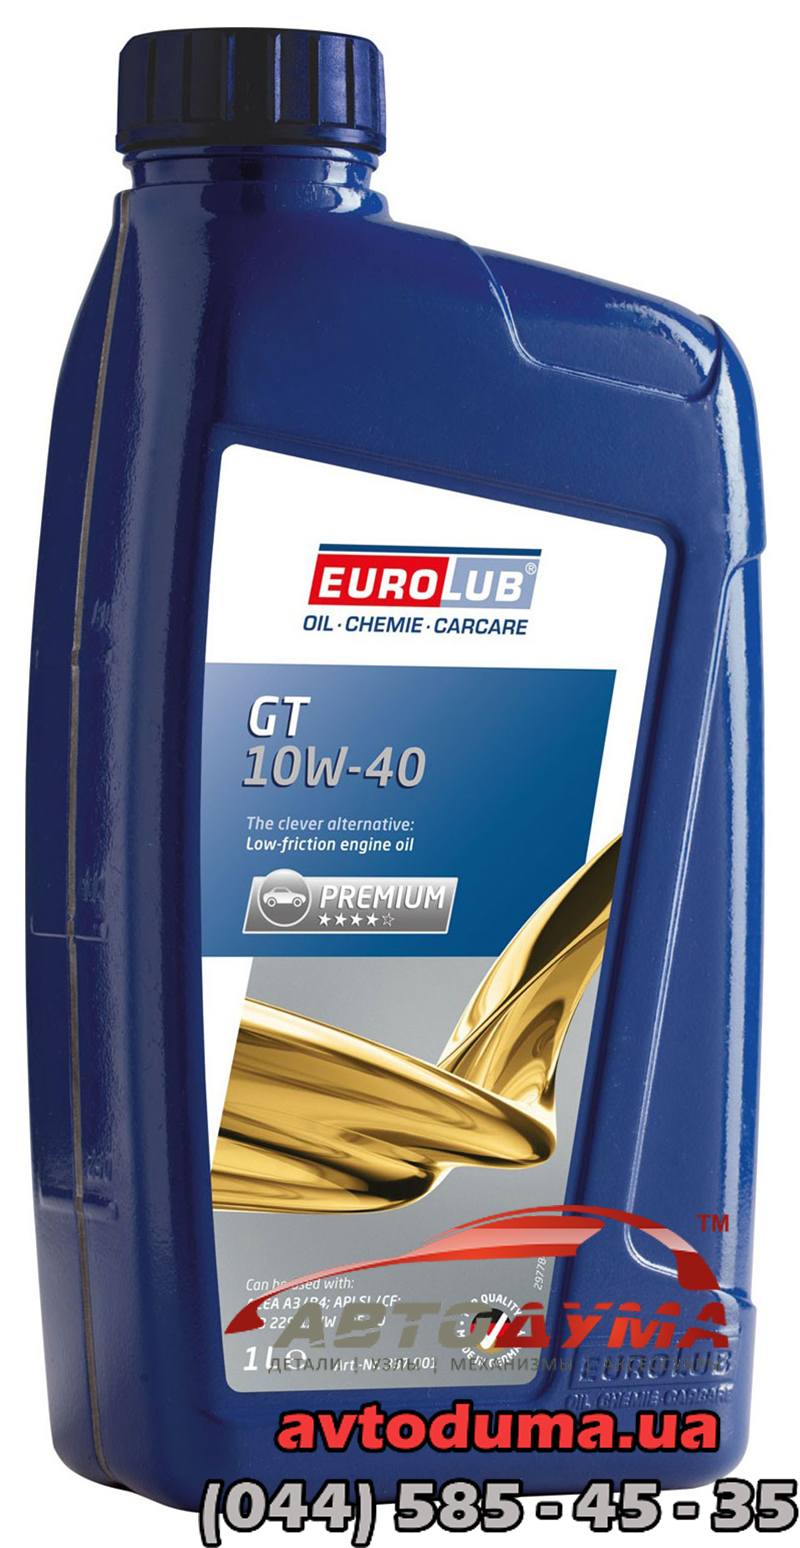 Eurolub GT 10W-40, 1л